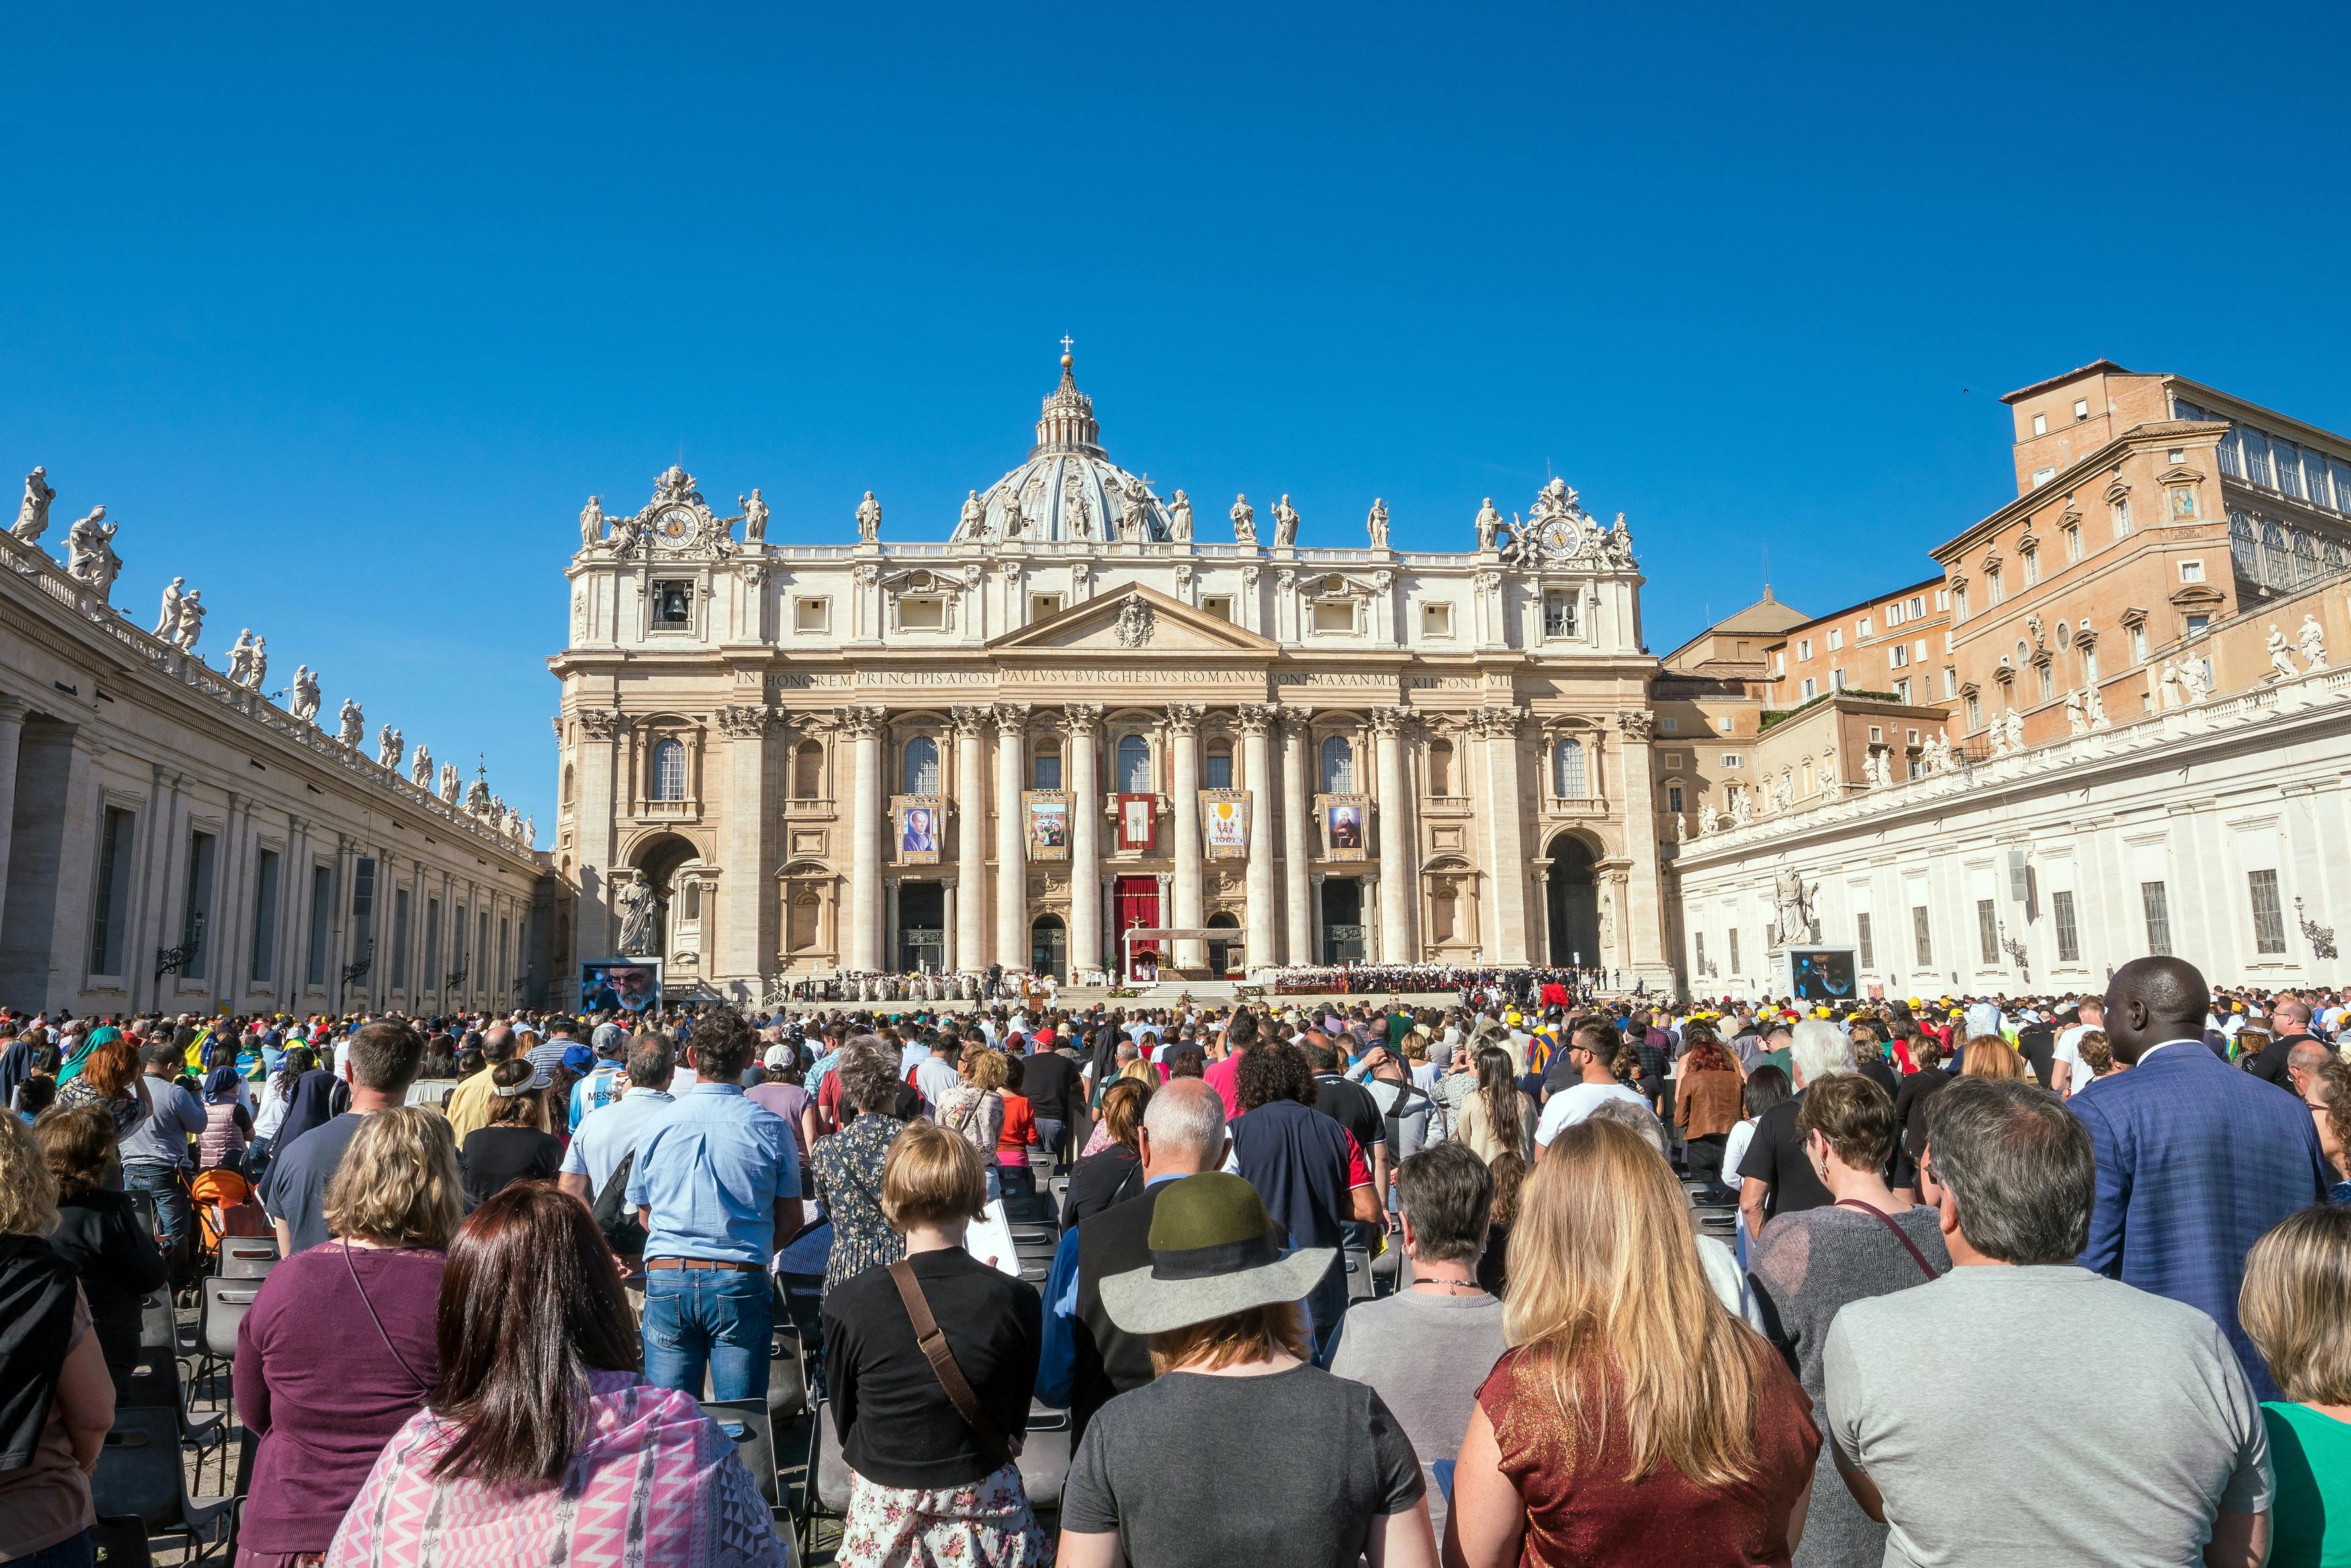 Papst-Franziskus-Audienz und Rom-Bustour mit einem lokalen Führer